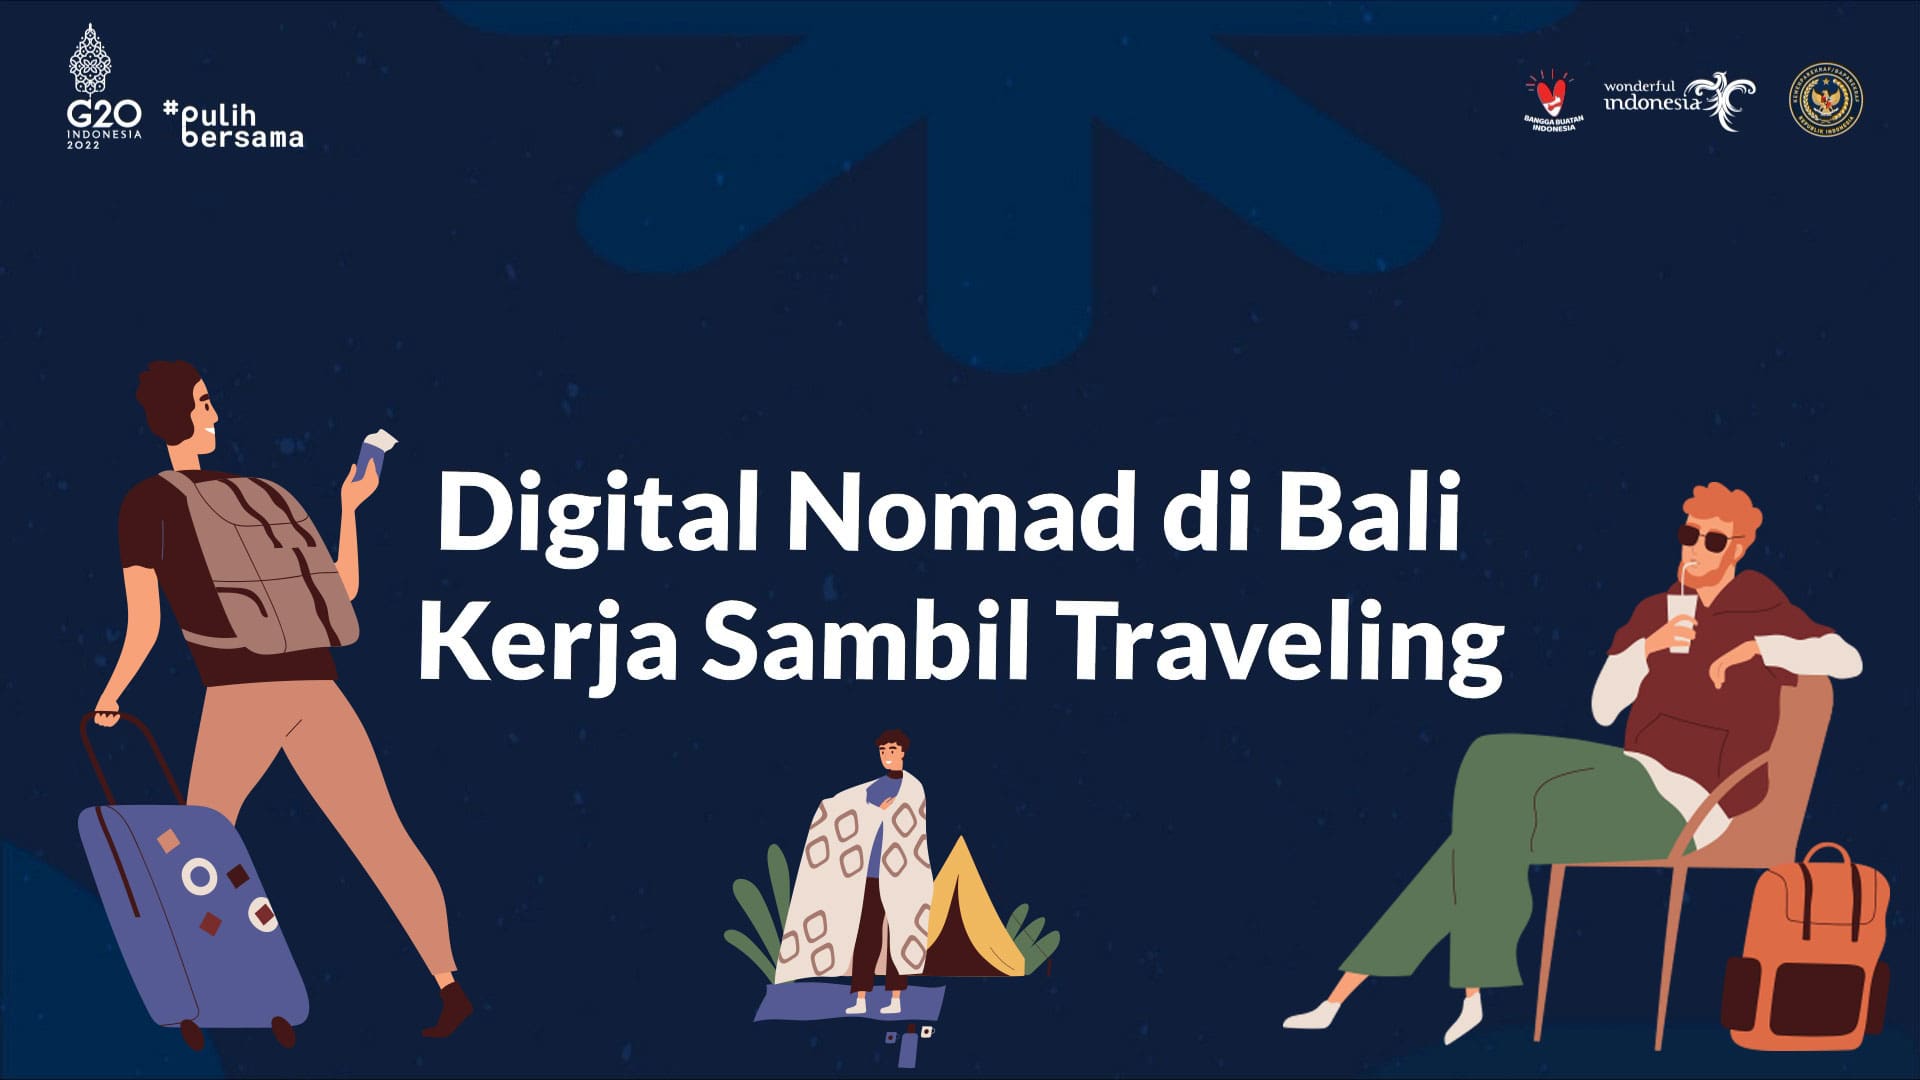 Digital Nomad di Bali, Kerja Sambil Traveling